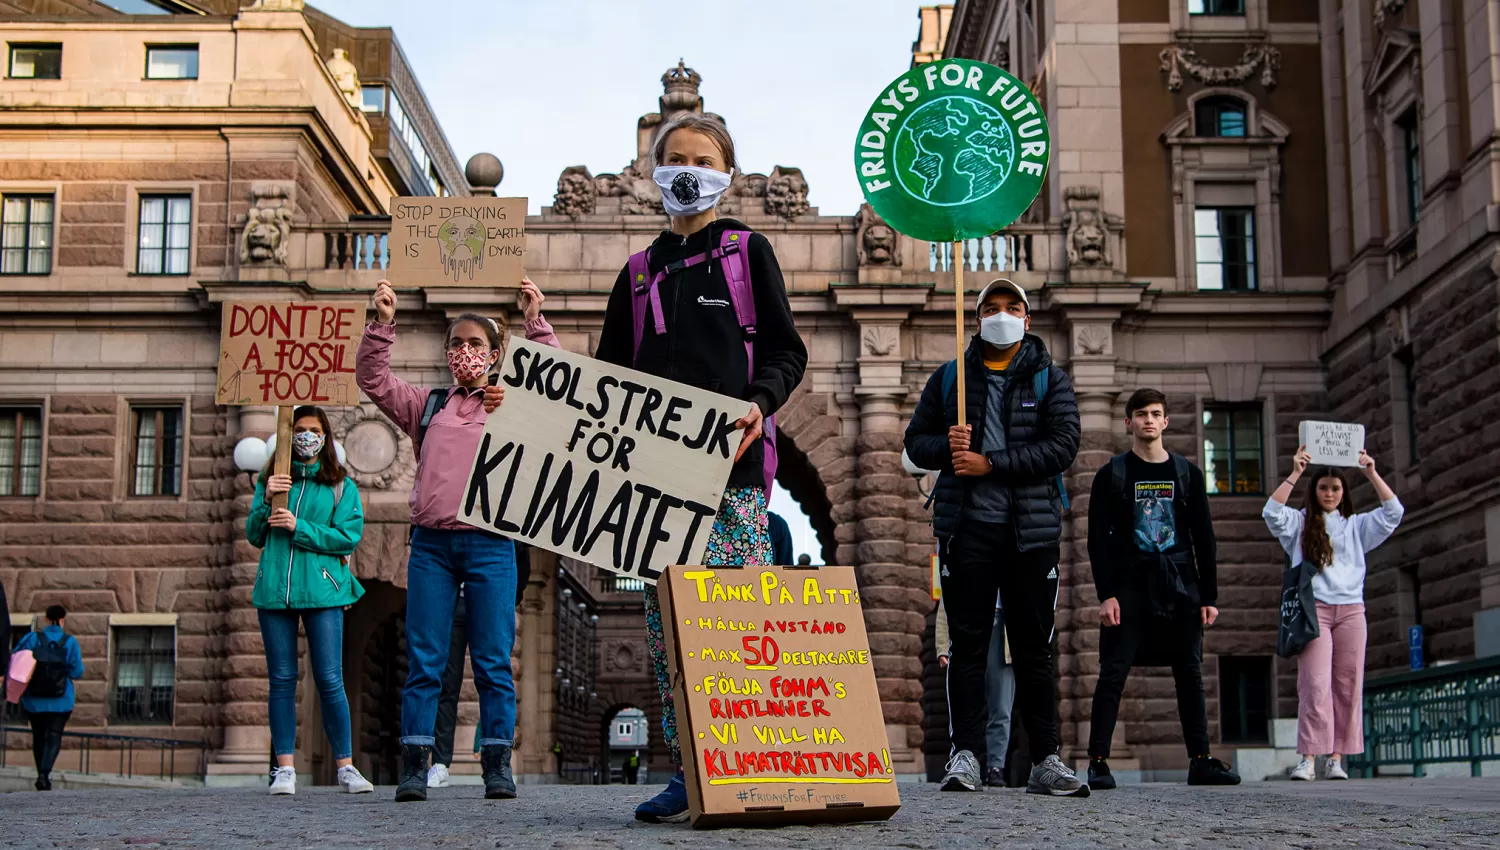 REFERENTE. Greta Thunberg, al frente de uno de los grupos que se movilizaron en Estocolmo, Suecia, para protestar contra el cambio climático.